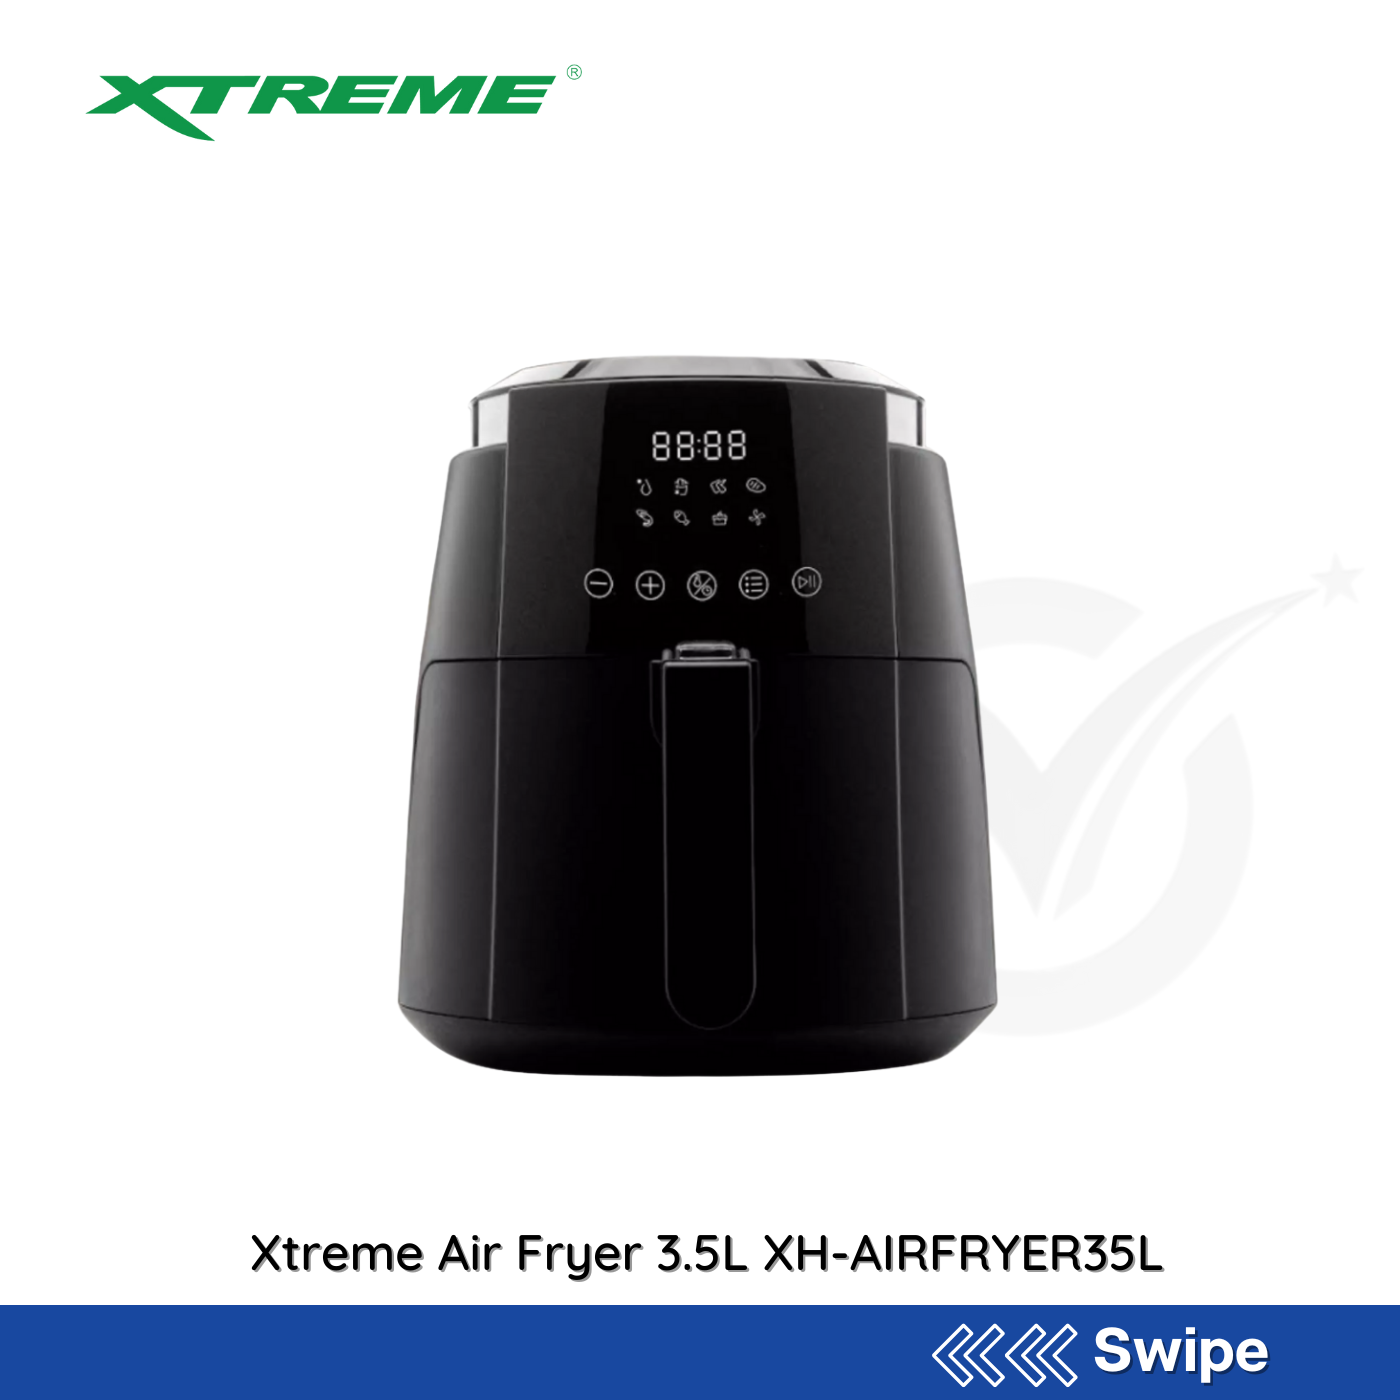 Xtreme Air Fryer 3.5L XH-AIRFRYER35L